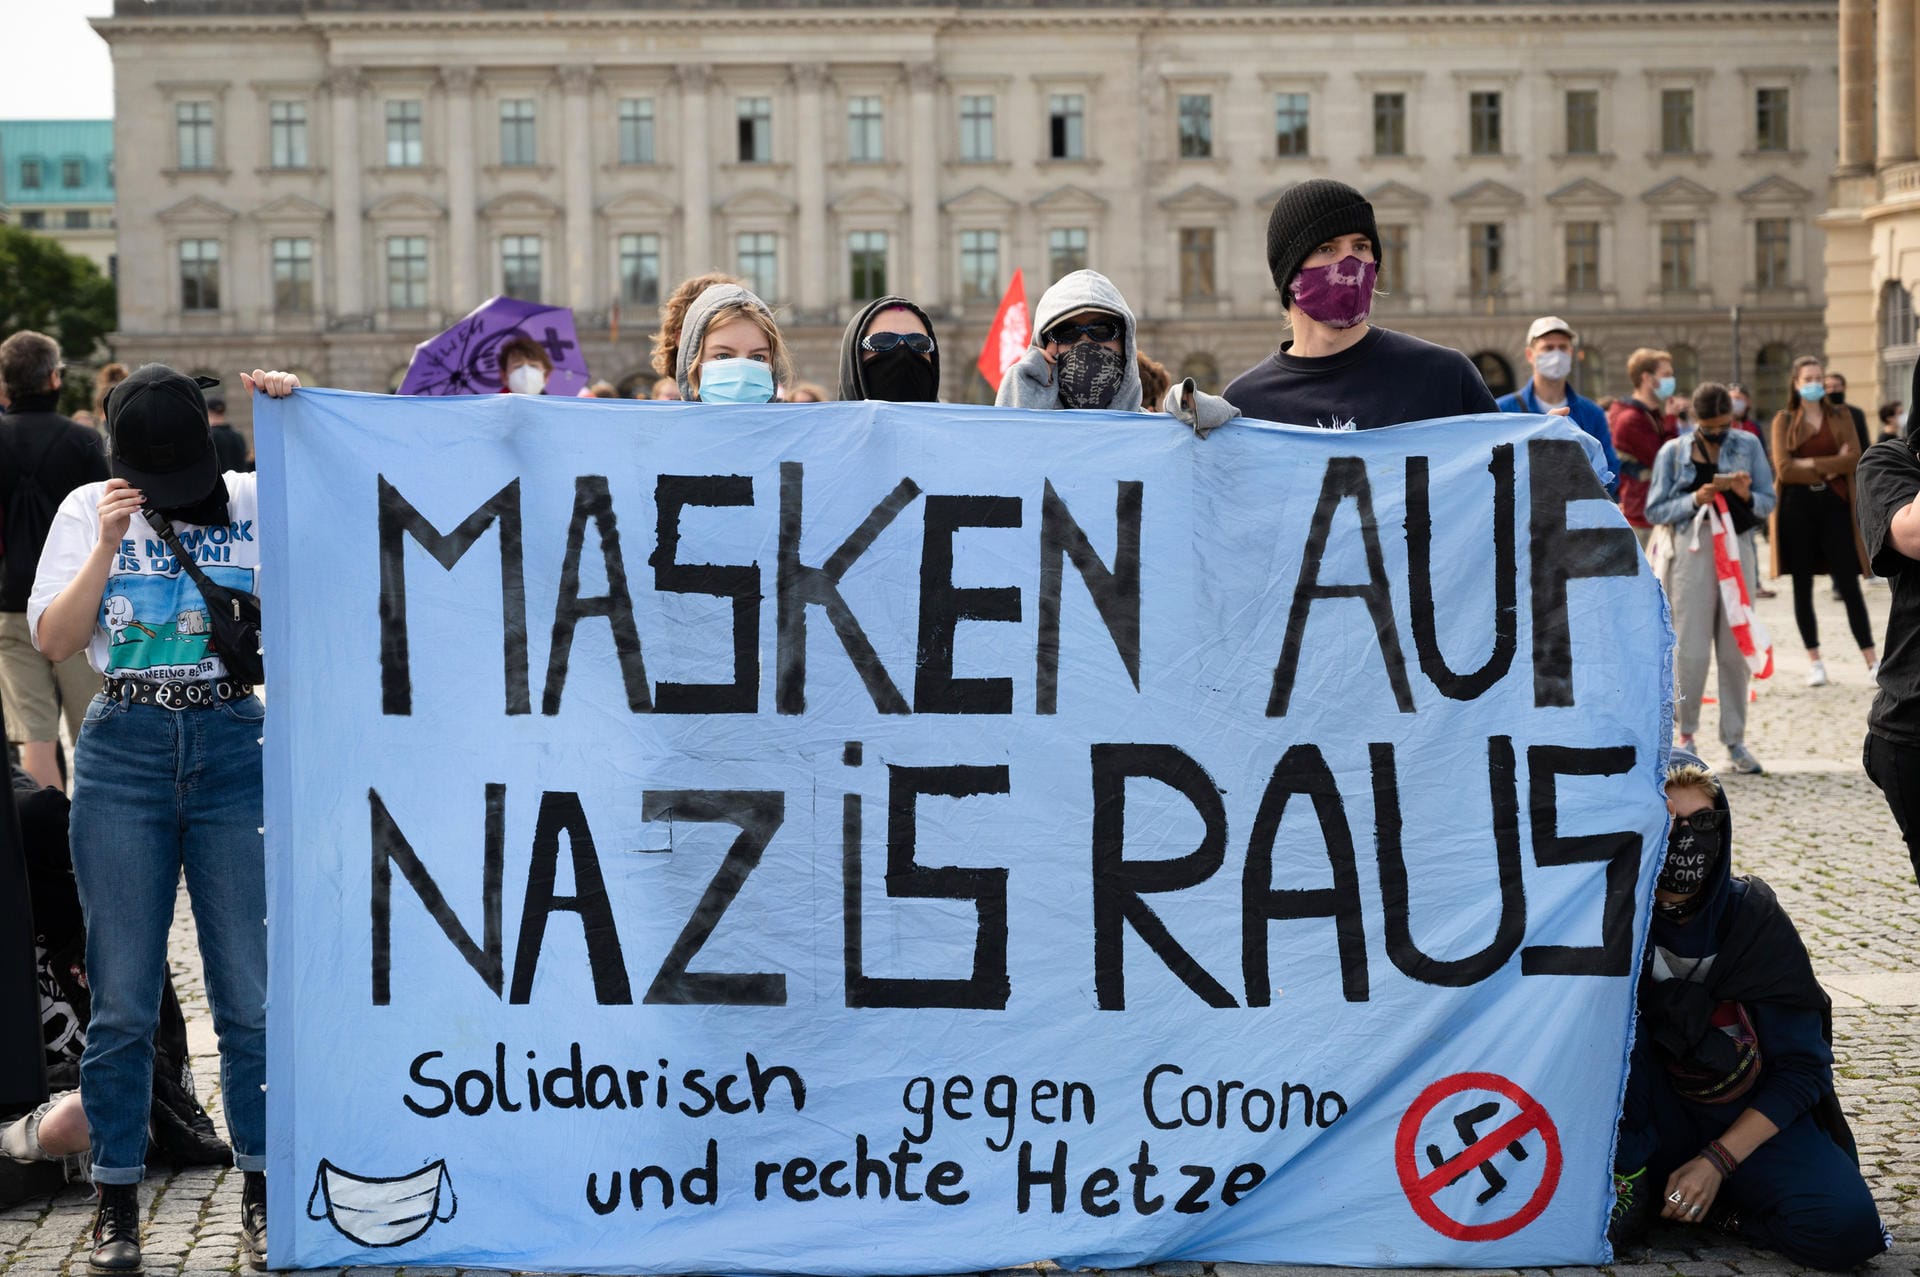 Die Gegendemonstranten halten Banner hoch mit Sprüchen wie "Masken auf Nazis raus".